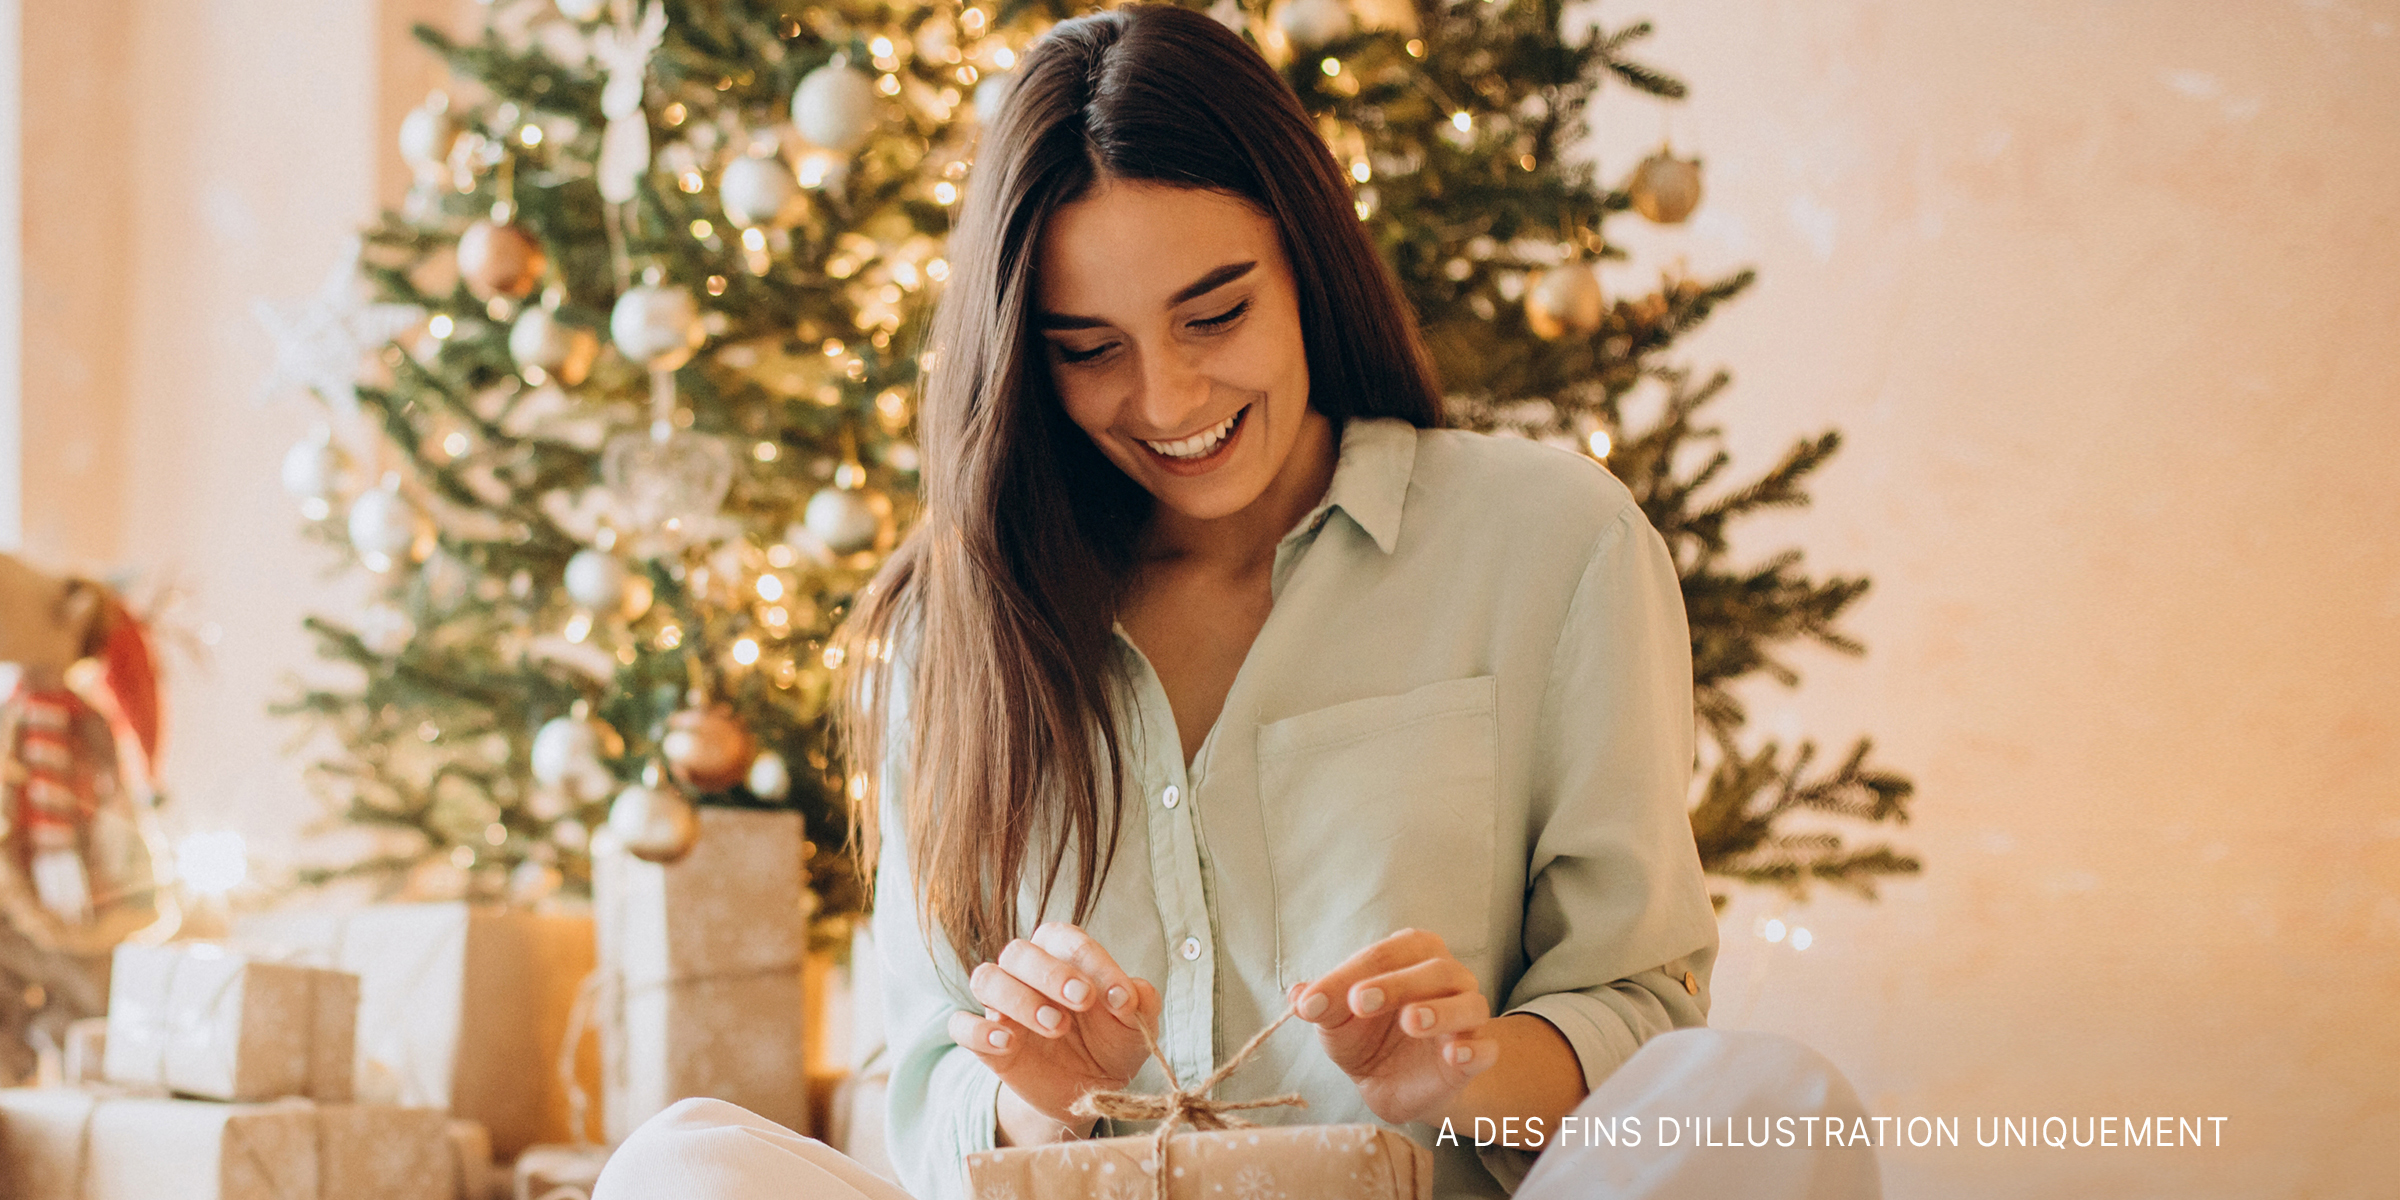 Une femme déballant un cadeau | Source : Shutterstock